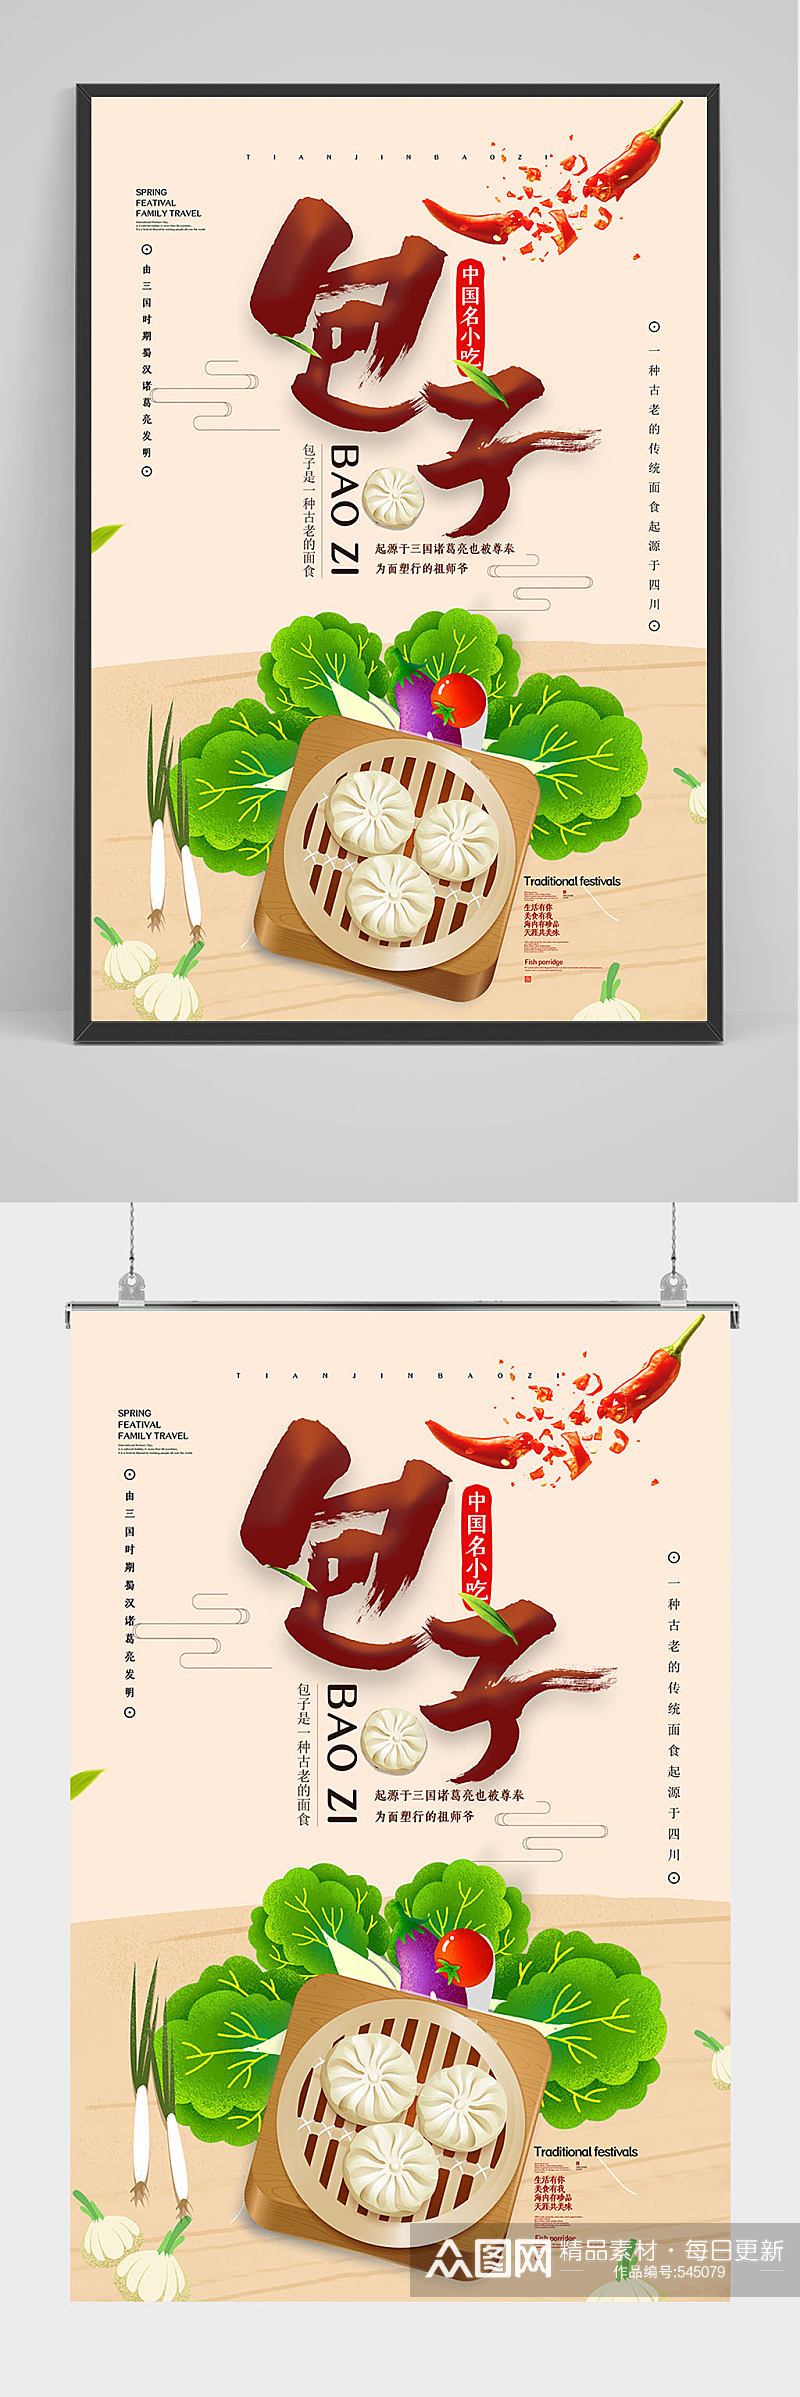 中华名小吃包子海报设计素材